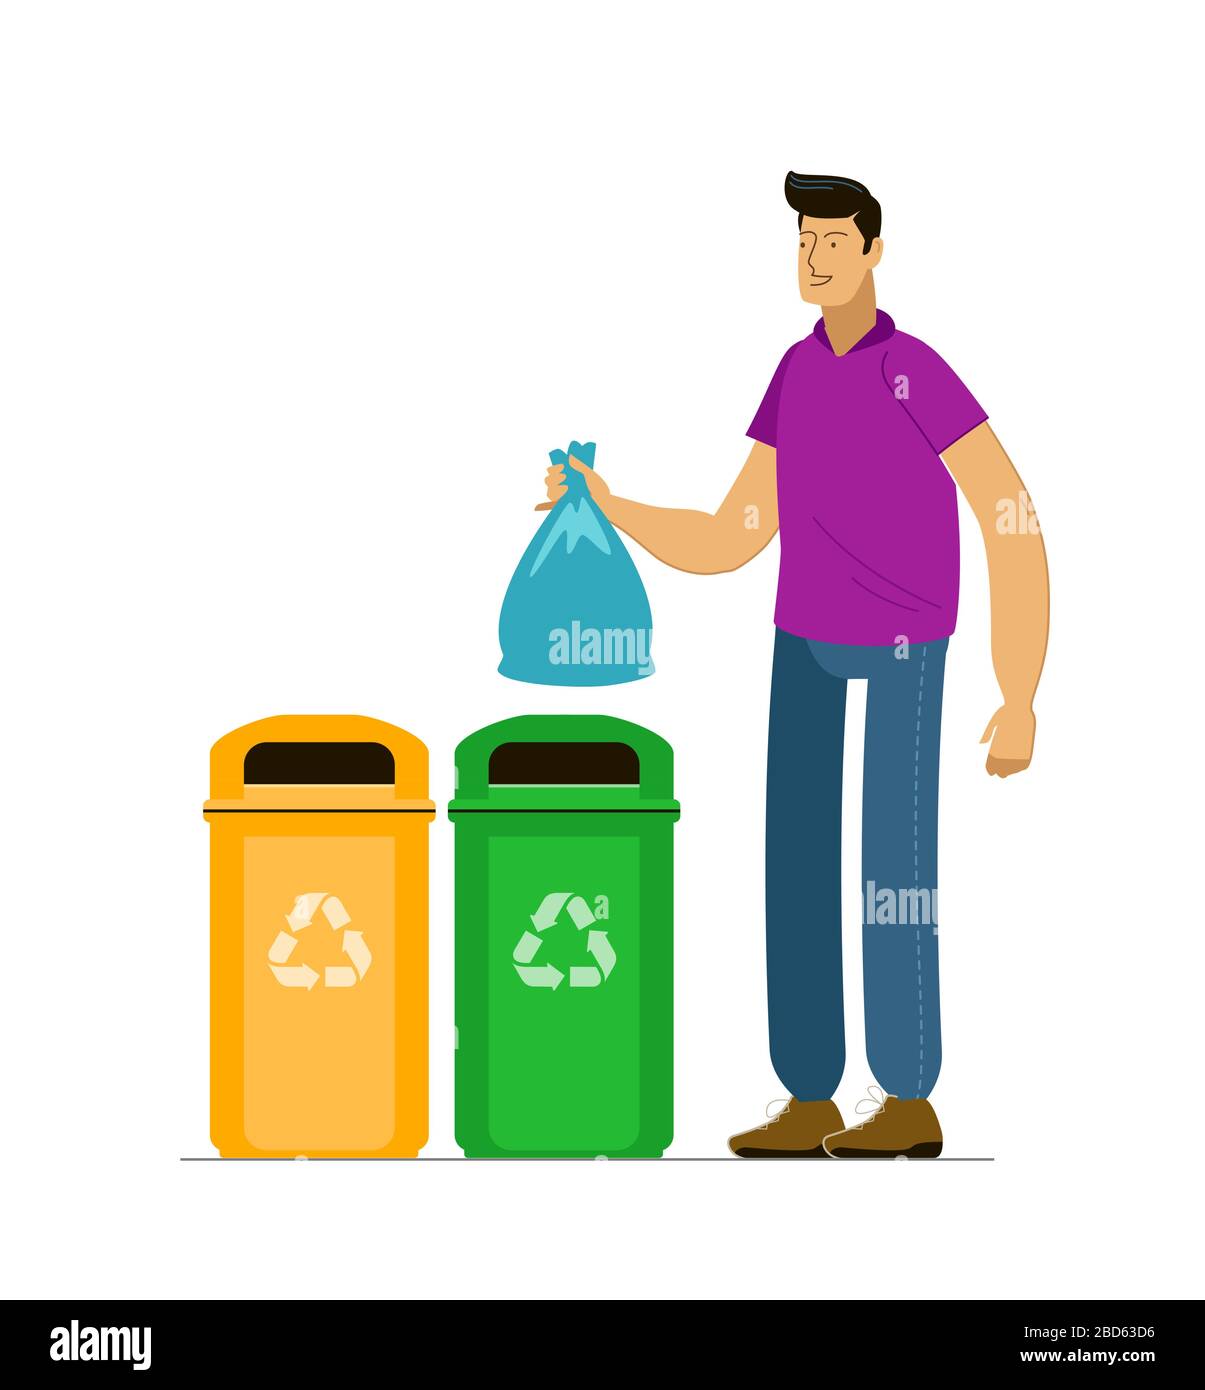 Conjunto de cubos de basura para reciclar diferentes tipos de residuos.  clasificación y reciclaje de residuos, ilustración vectorial